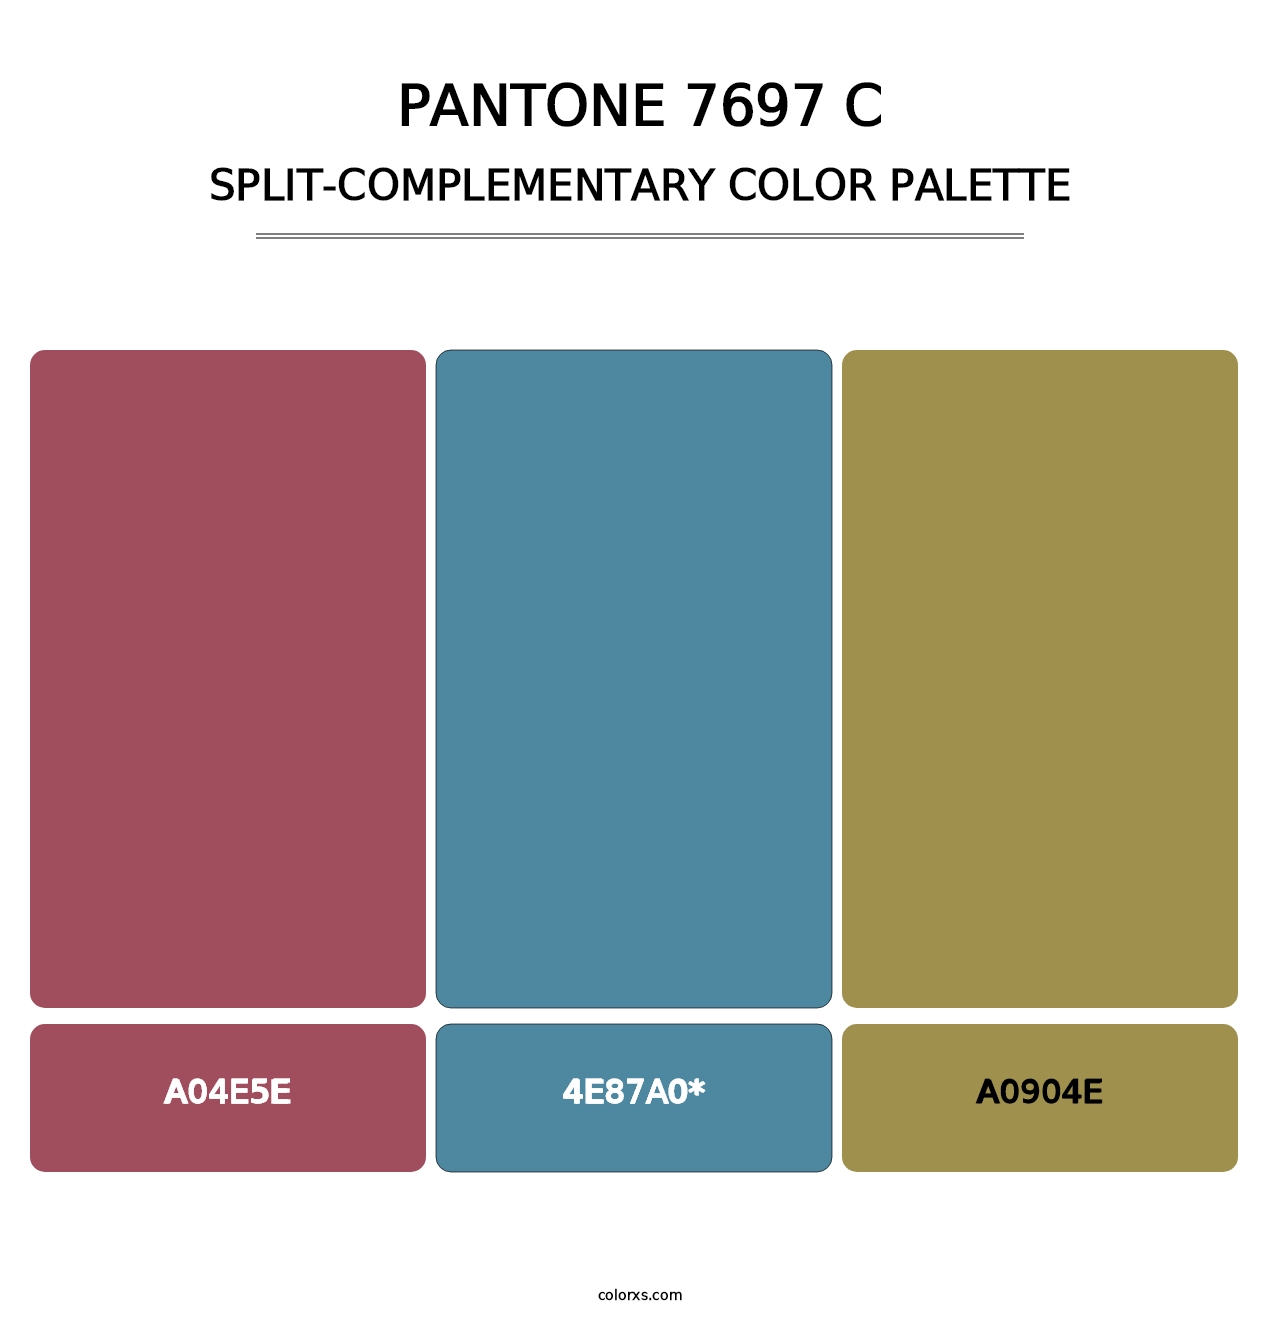 PANTONE 7697 C - Split-Complementary Color Palette